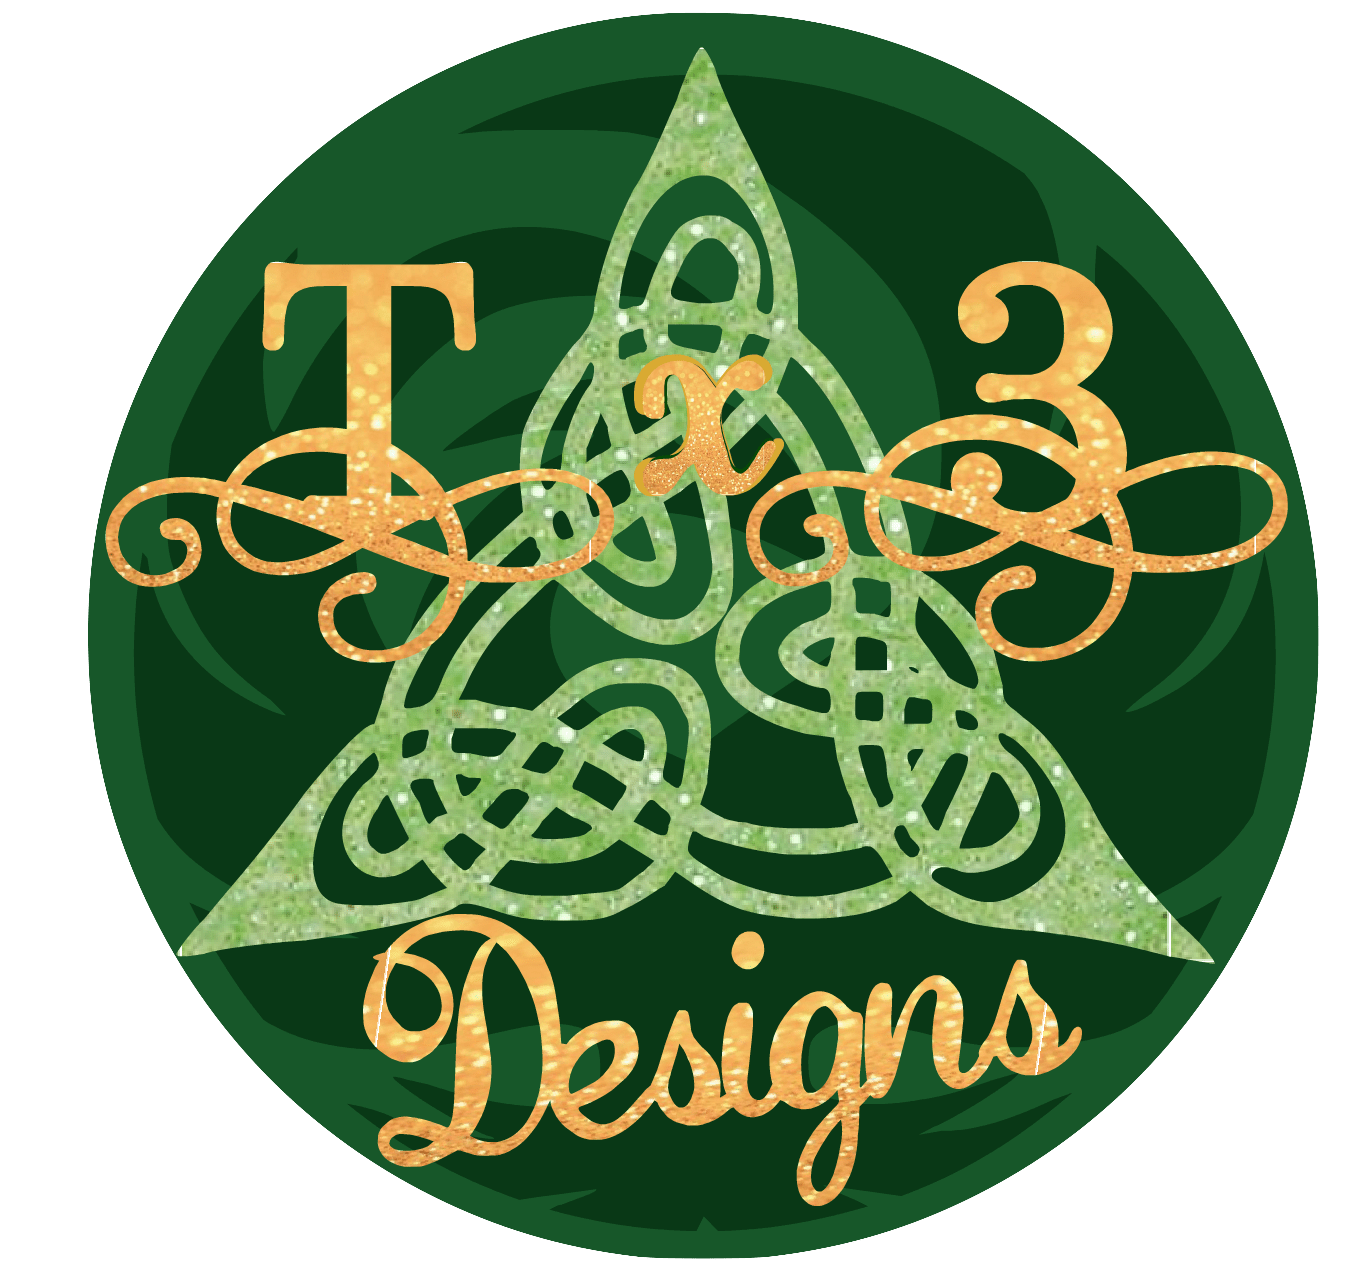 Tx3 Designs LLC